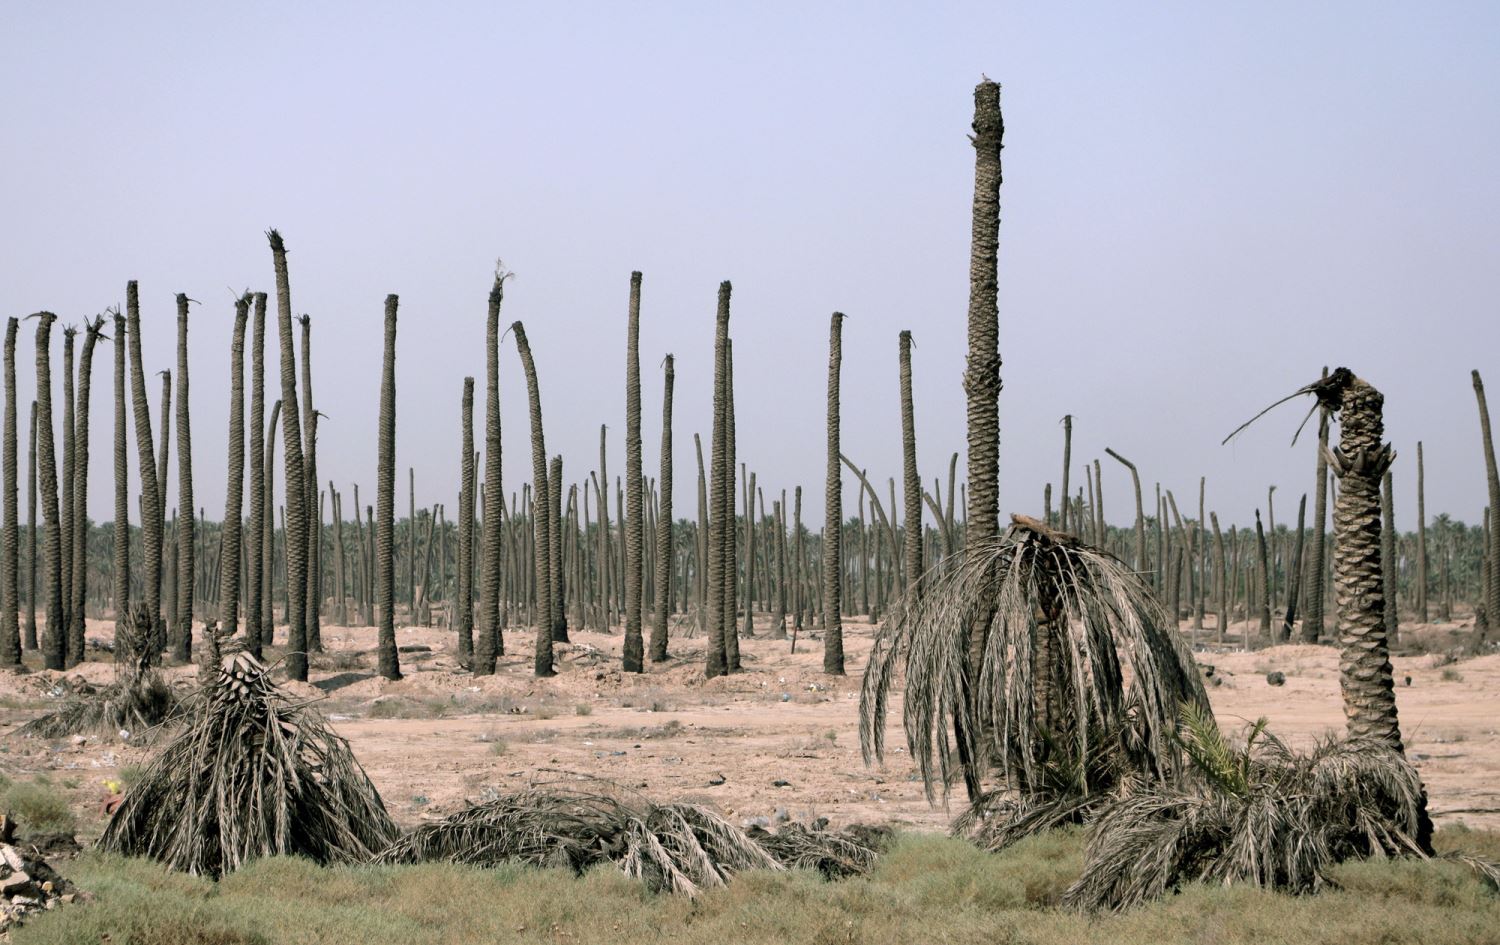 نقص مياه الفرات والحر الشديد يهددان زراعة النخيل في جنوب العراق بالاندثار